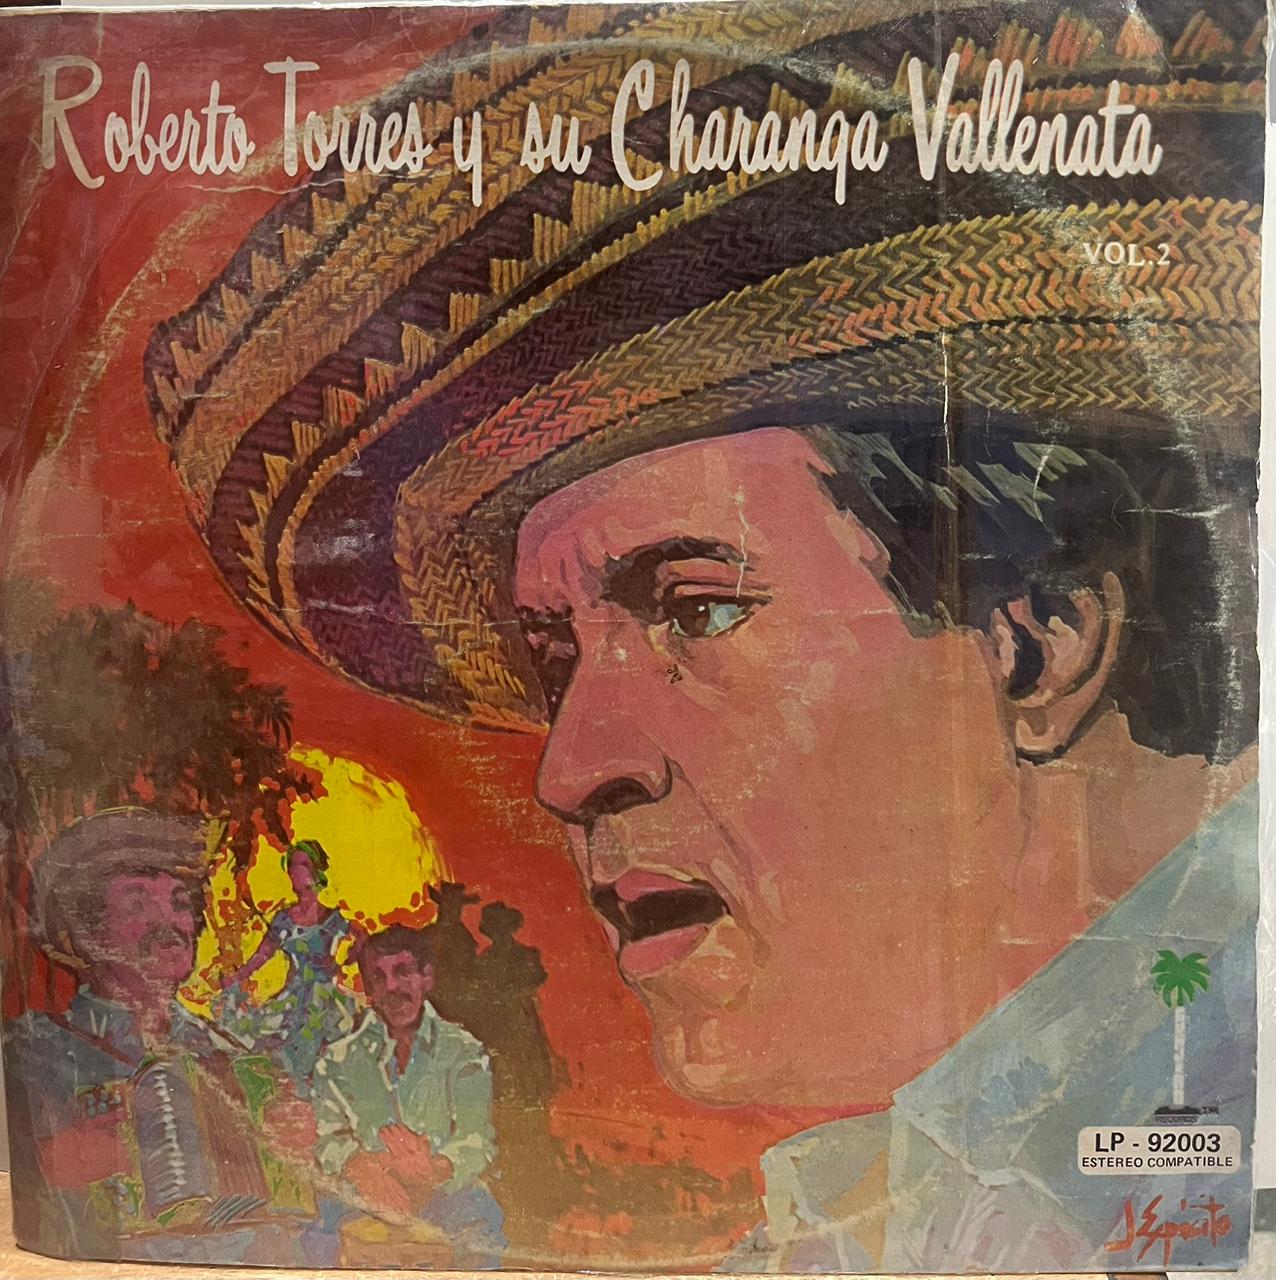 ROBERTO TORRES Y SU CHARANGO VALLENATA VOL 2 LP